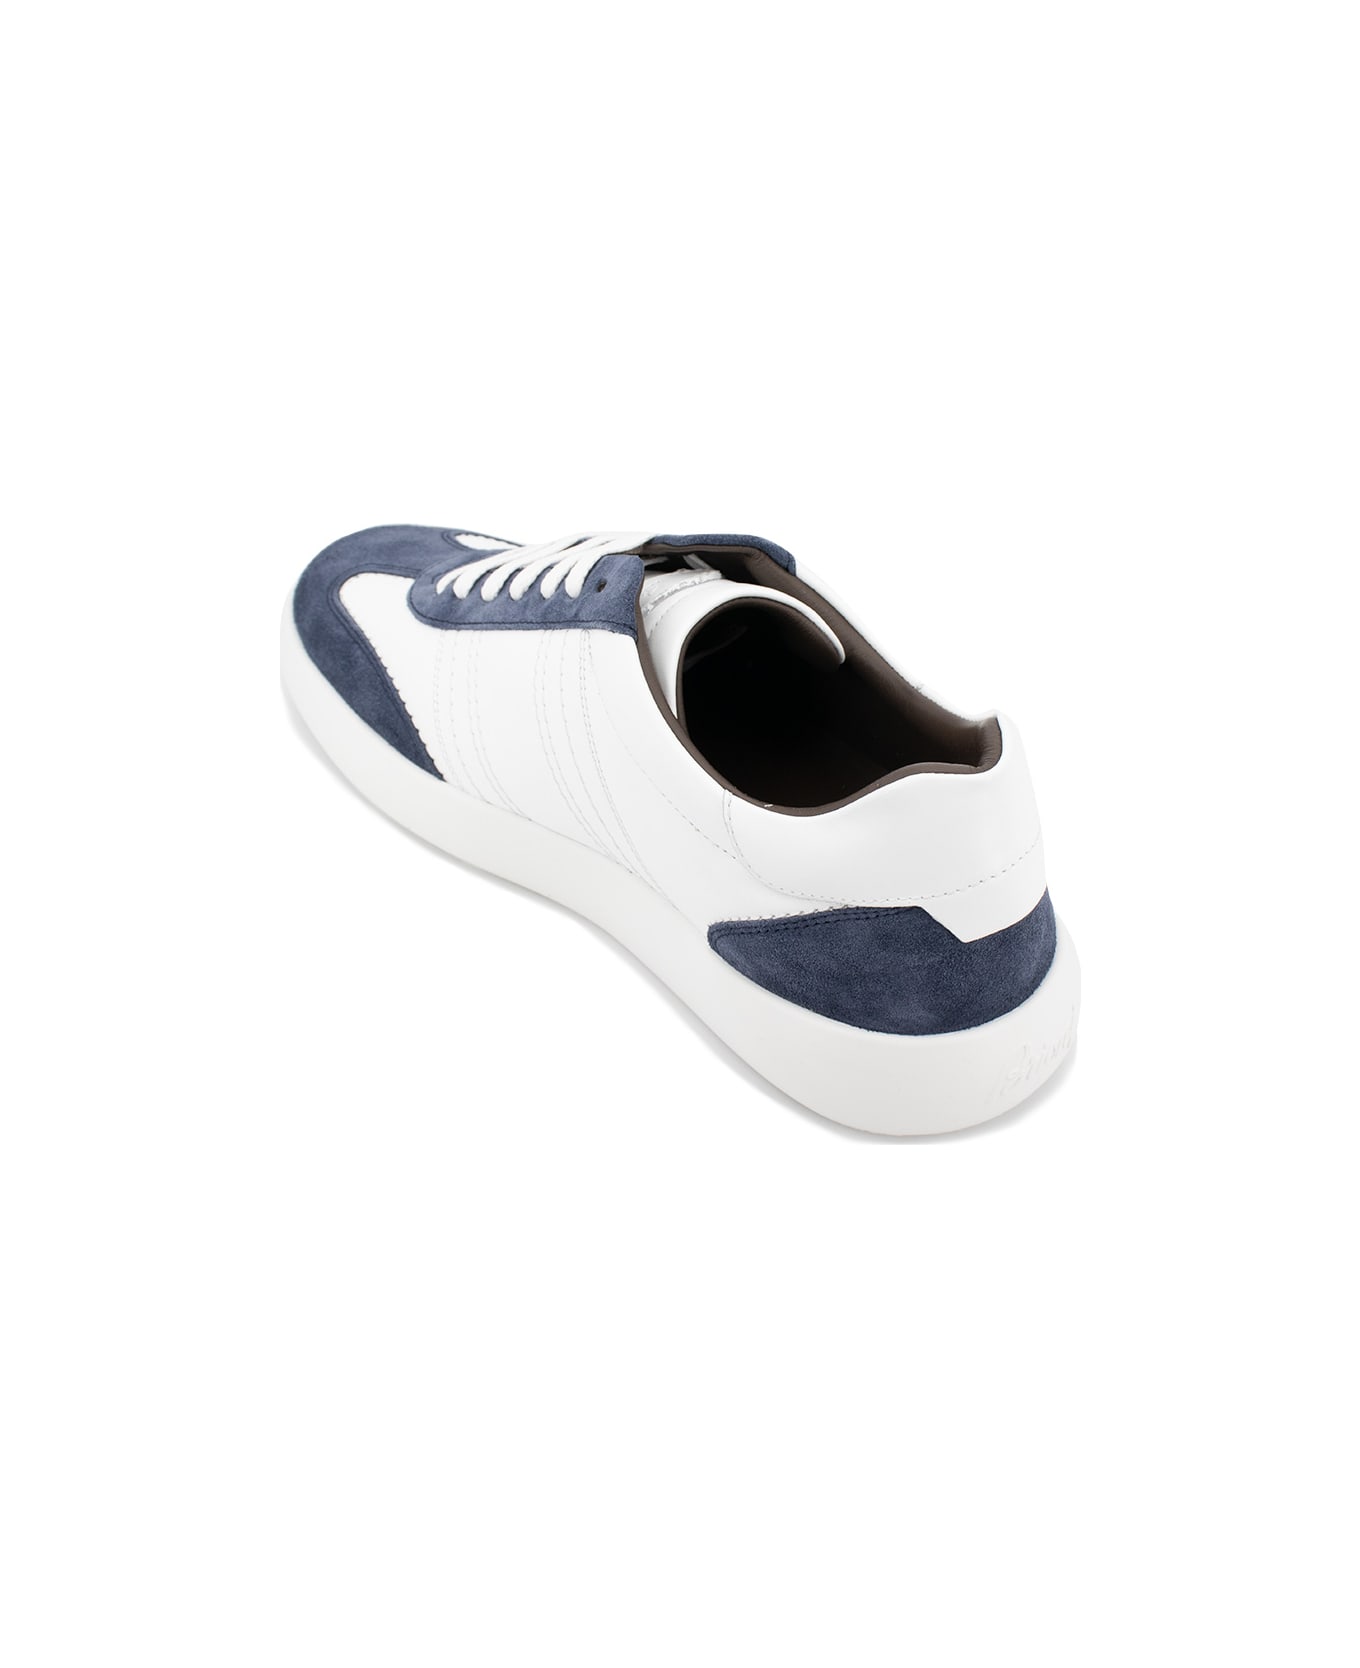 Brioni Sneakers - SAPPHIRE_WHITE